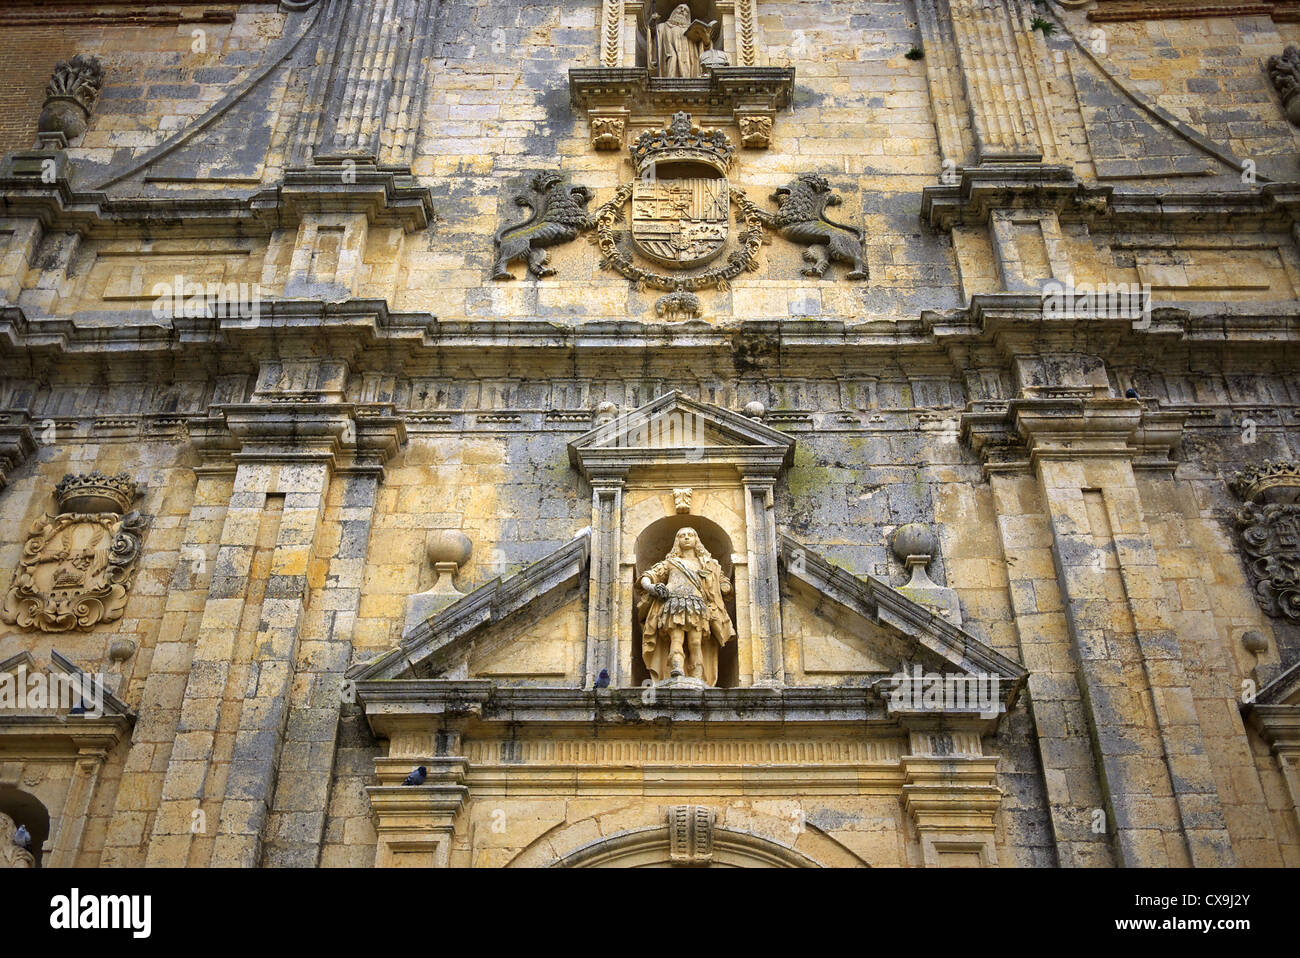 The façade of the Monasterio de San Zoilo near Carrion de los Condes, Spain. Stock Photo